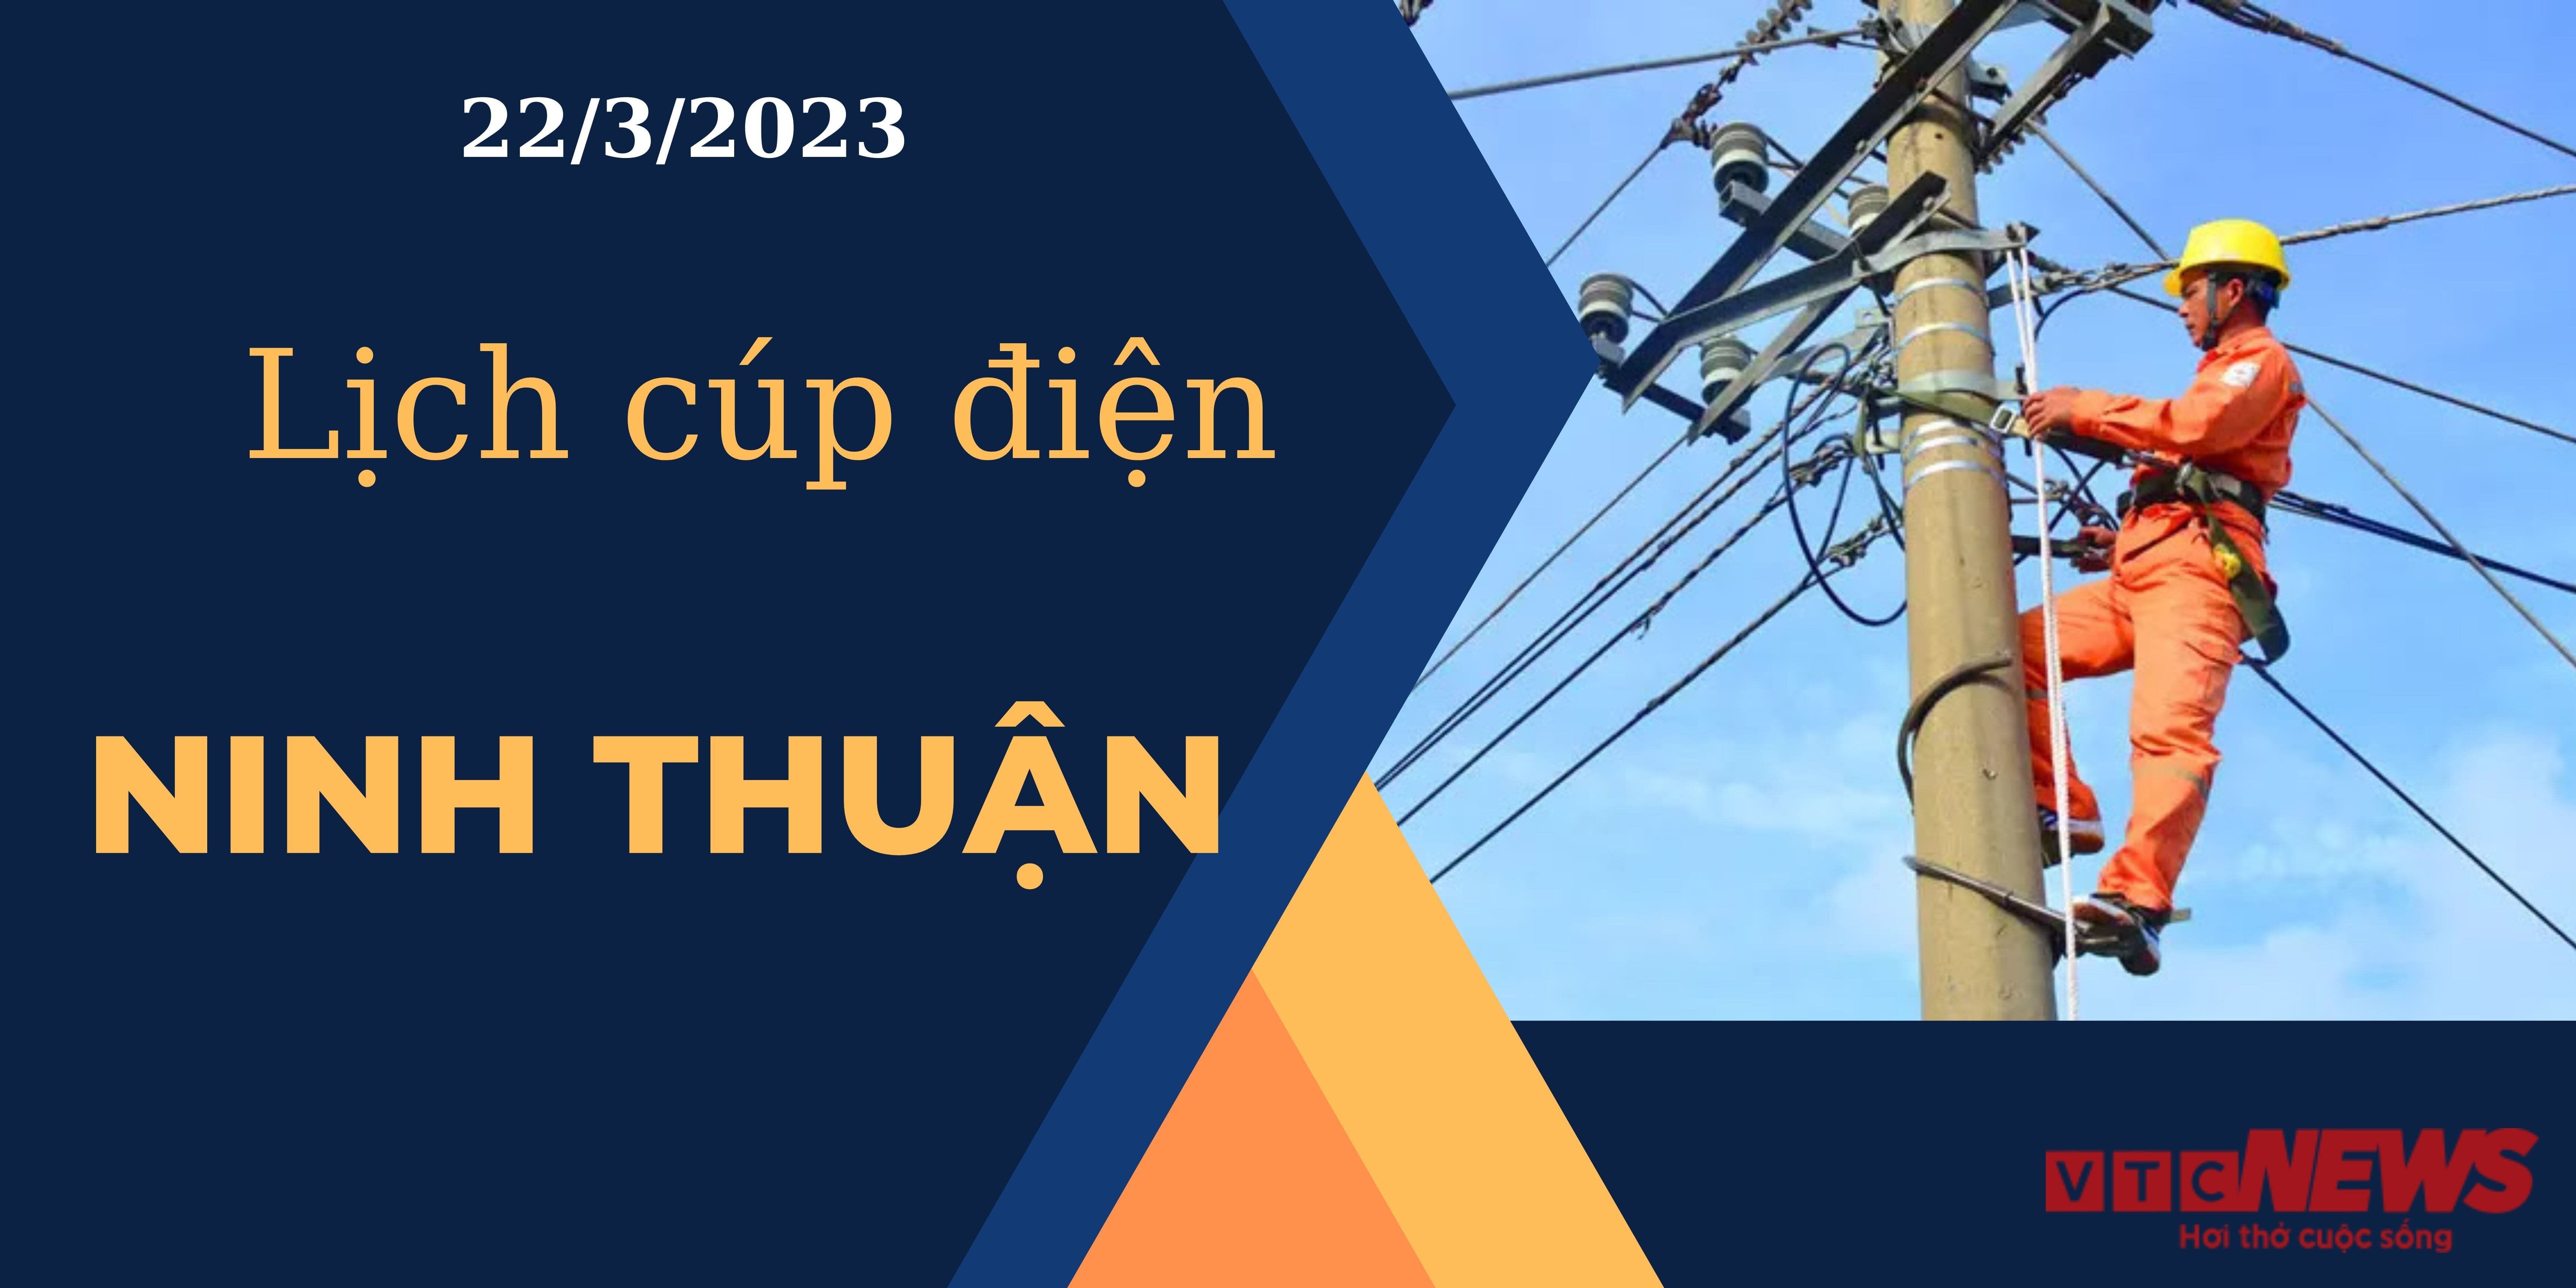 Lịch cúp điện hôm nay tại Ninh Thuận ngày 22/03/2023  - 1